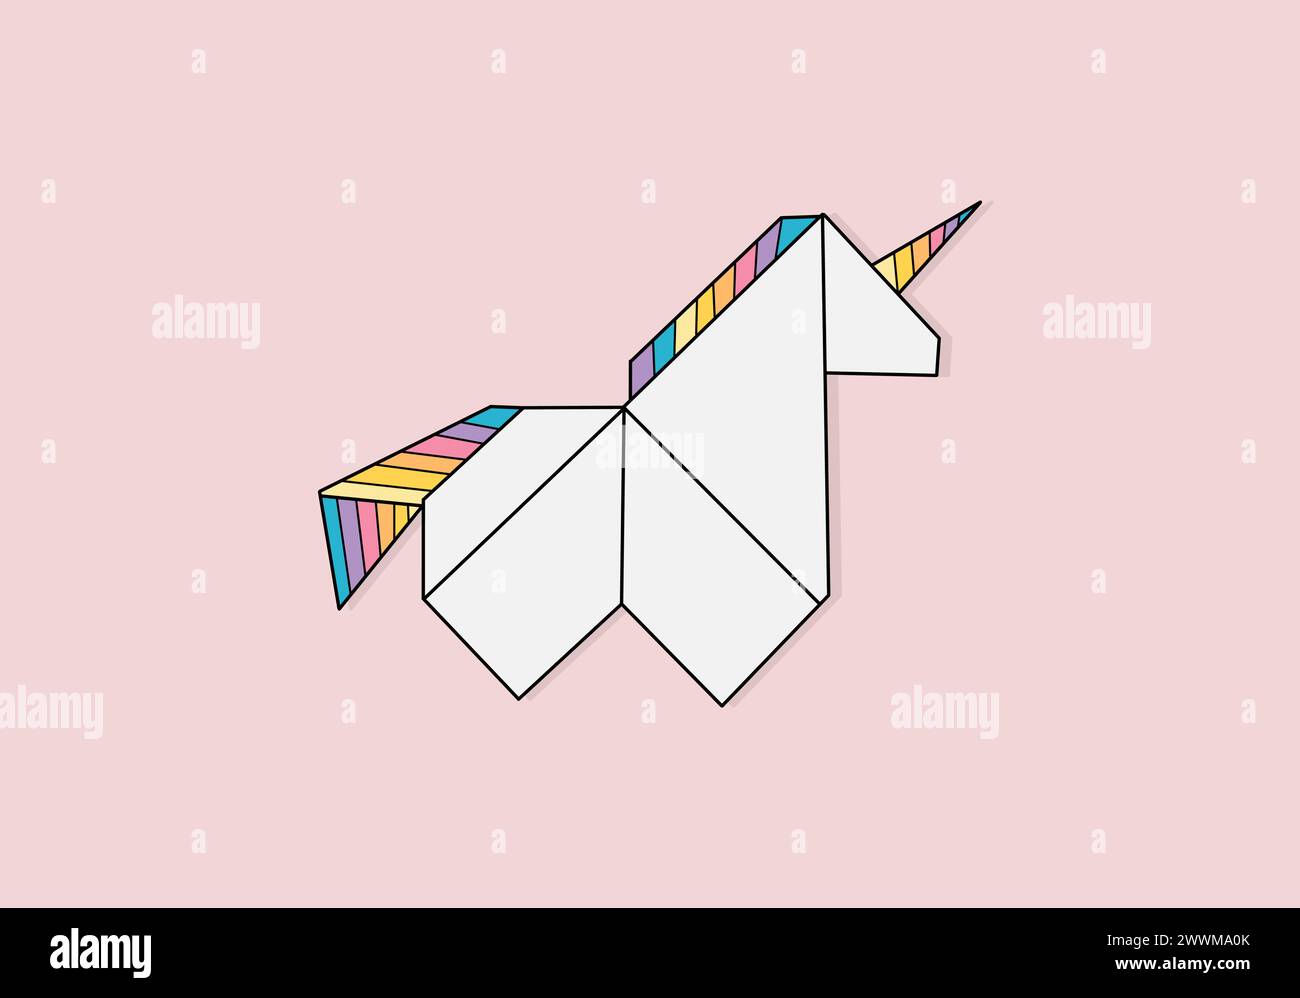 Illustrazione geometrica dell'unicorno origami su carta. Personaggio da fiaba. Stampa vettoriale piatta, Magical kingdom Illustrazione Vettoriale